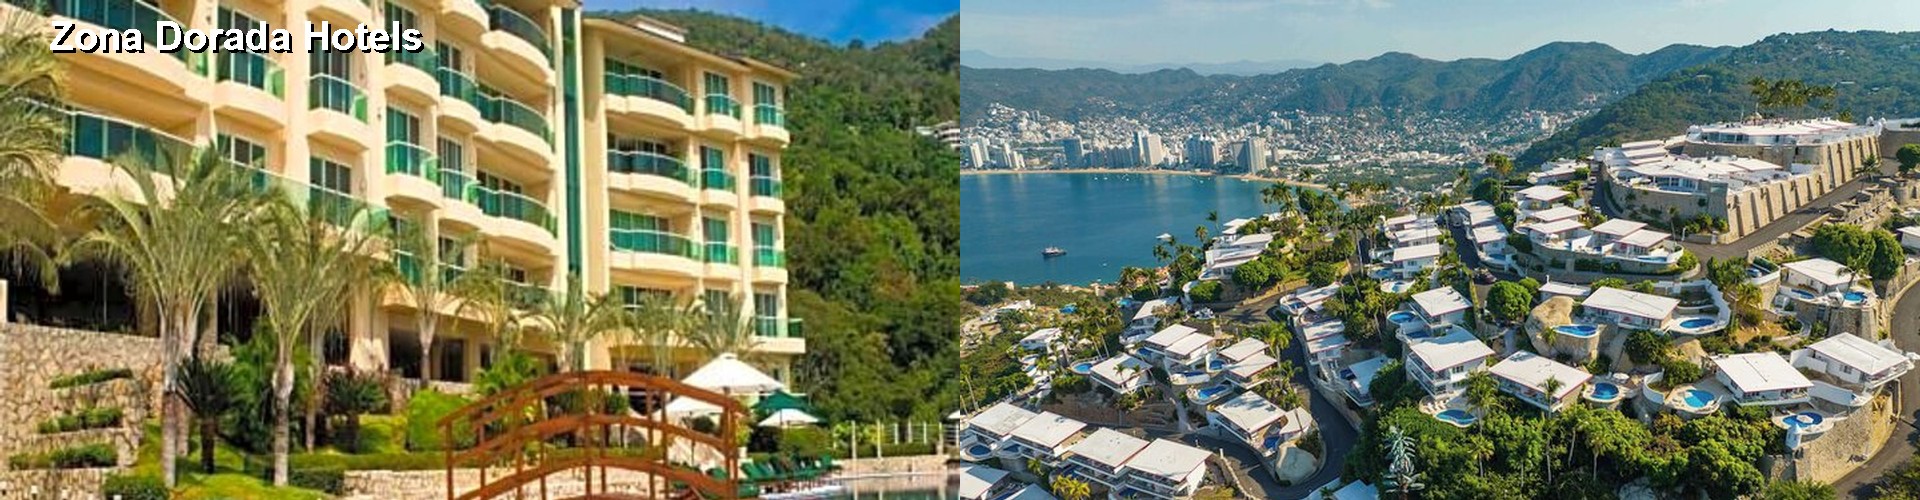 5 Best Hotels near Zona Dorada